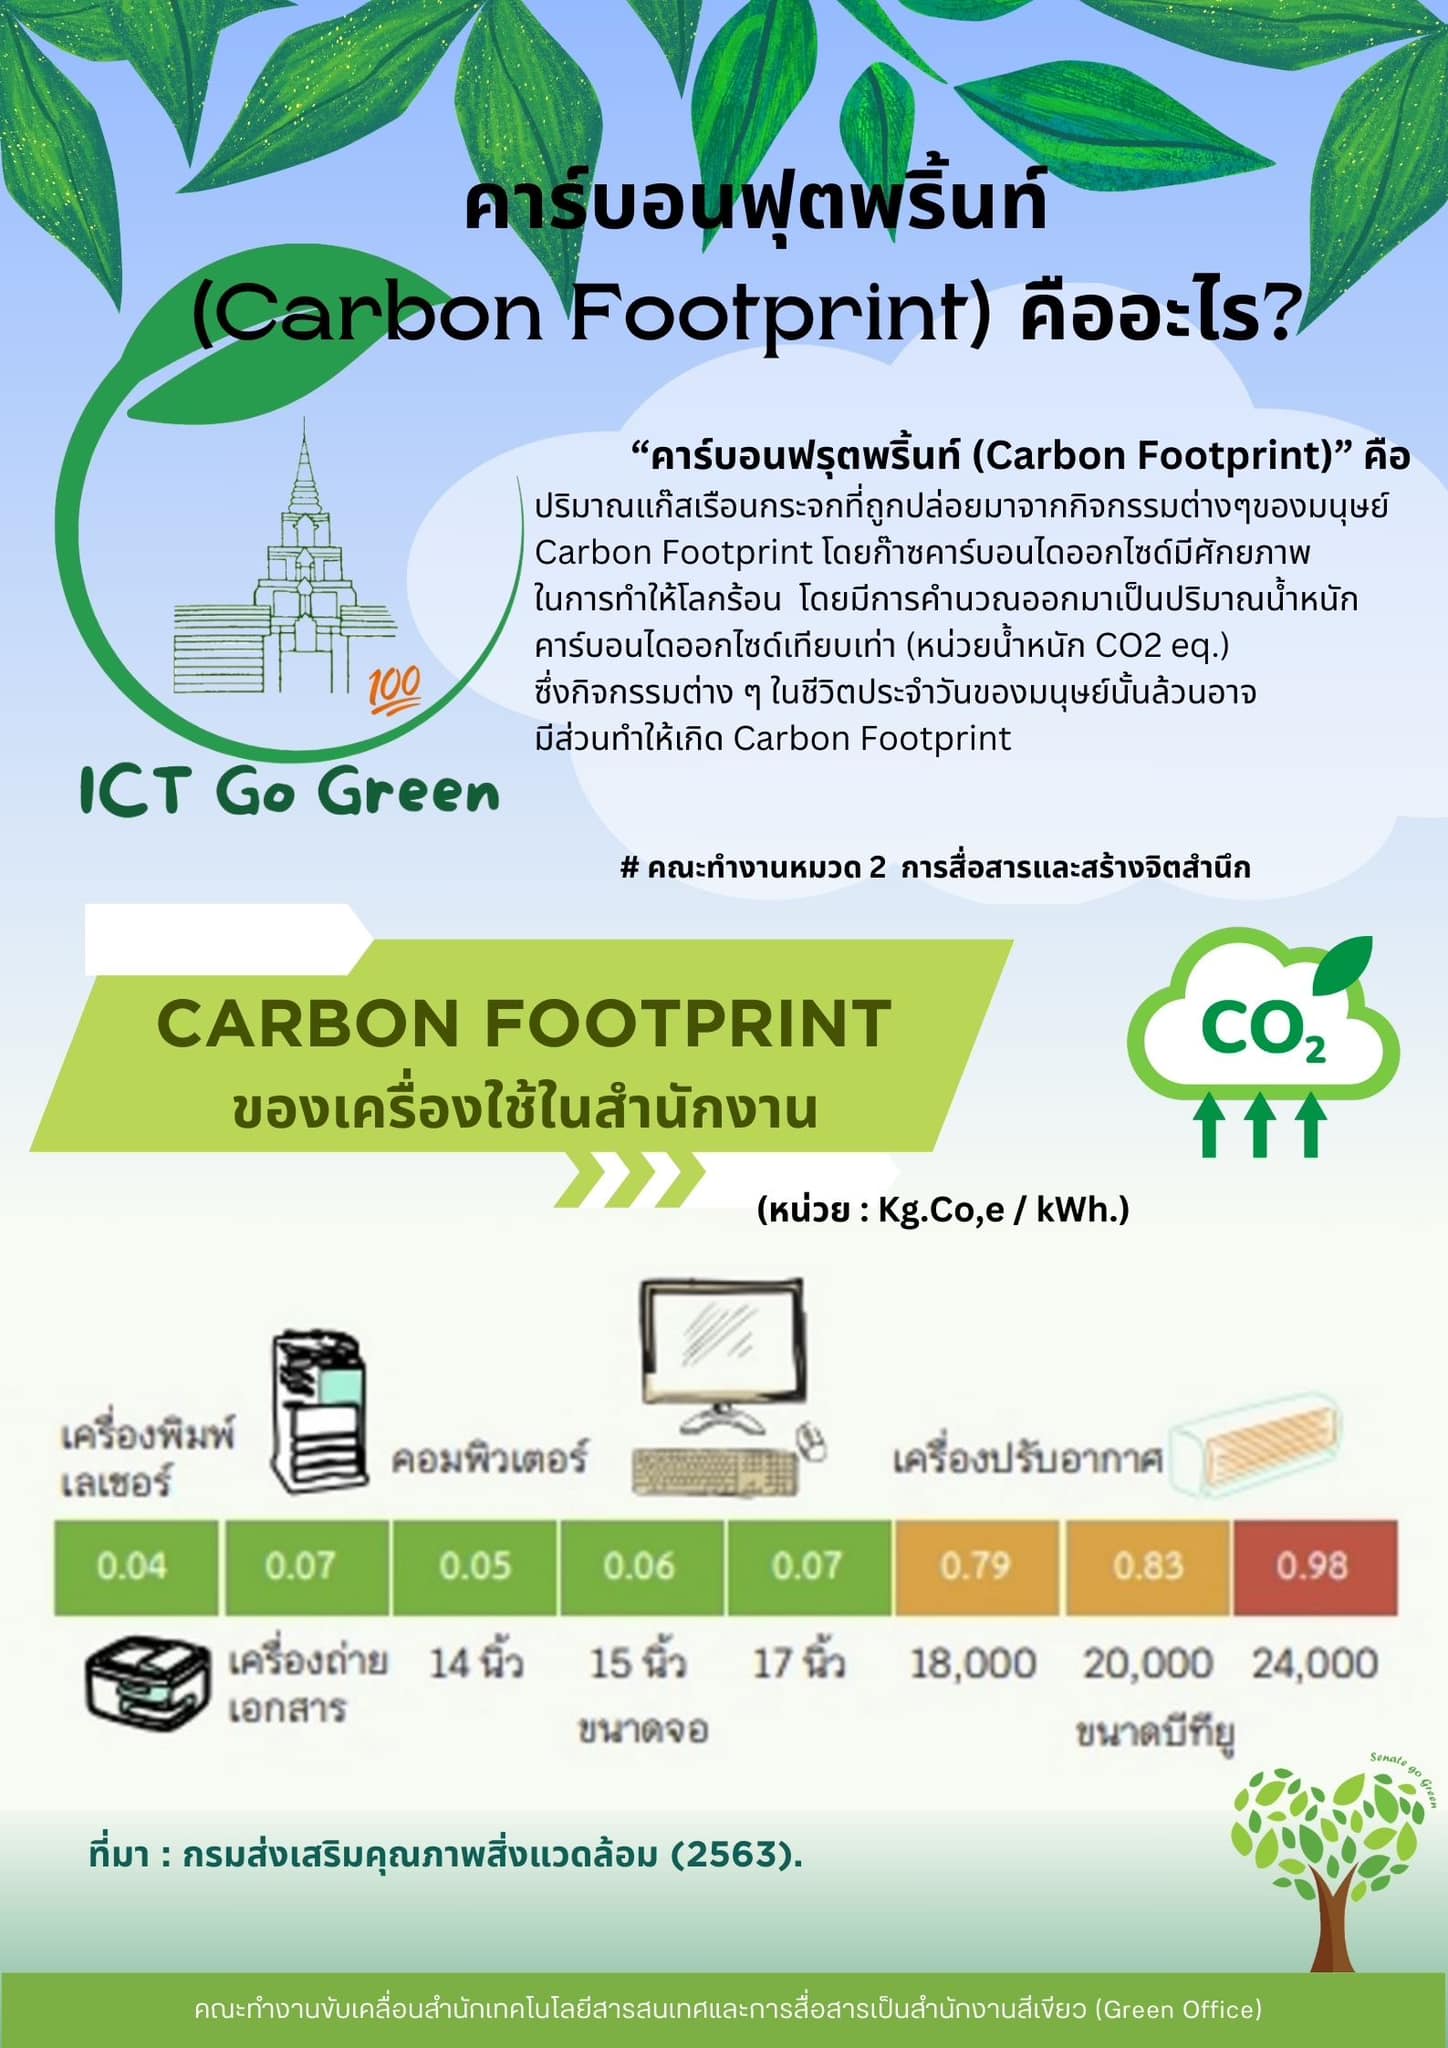 คาร์บอนฟุตพริ้นท์ (Carbon Footprint) คืออะไร?